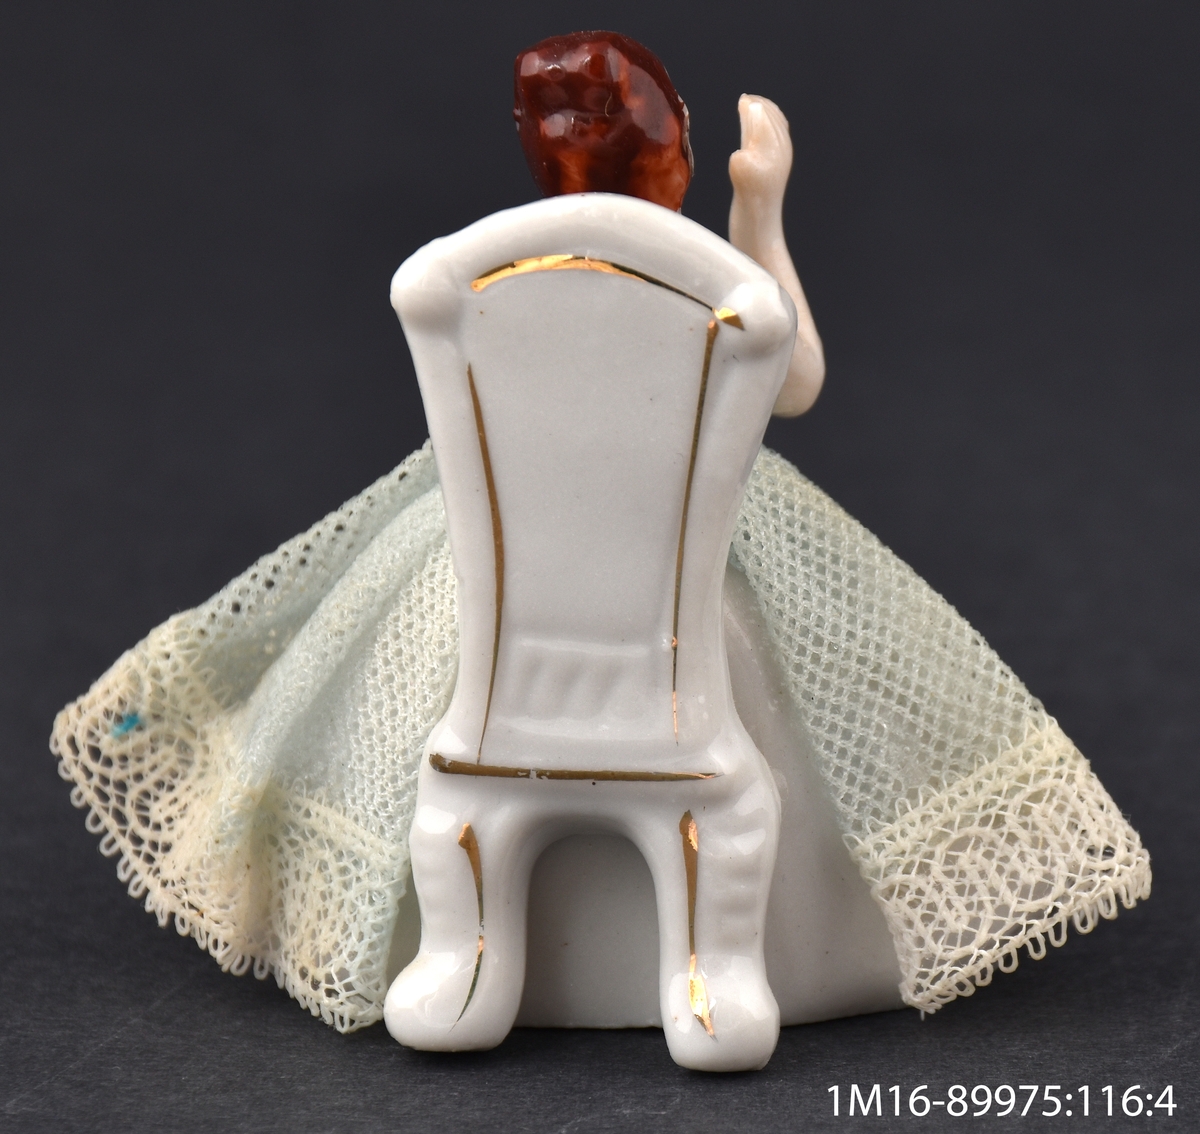 Leksak av porslin, i form av en dam som sitter på en stol i vitt och guld och applåderar. Damens kjol är gjord av veckat tyg med en spetskant nedtill.